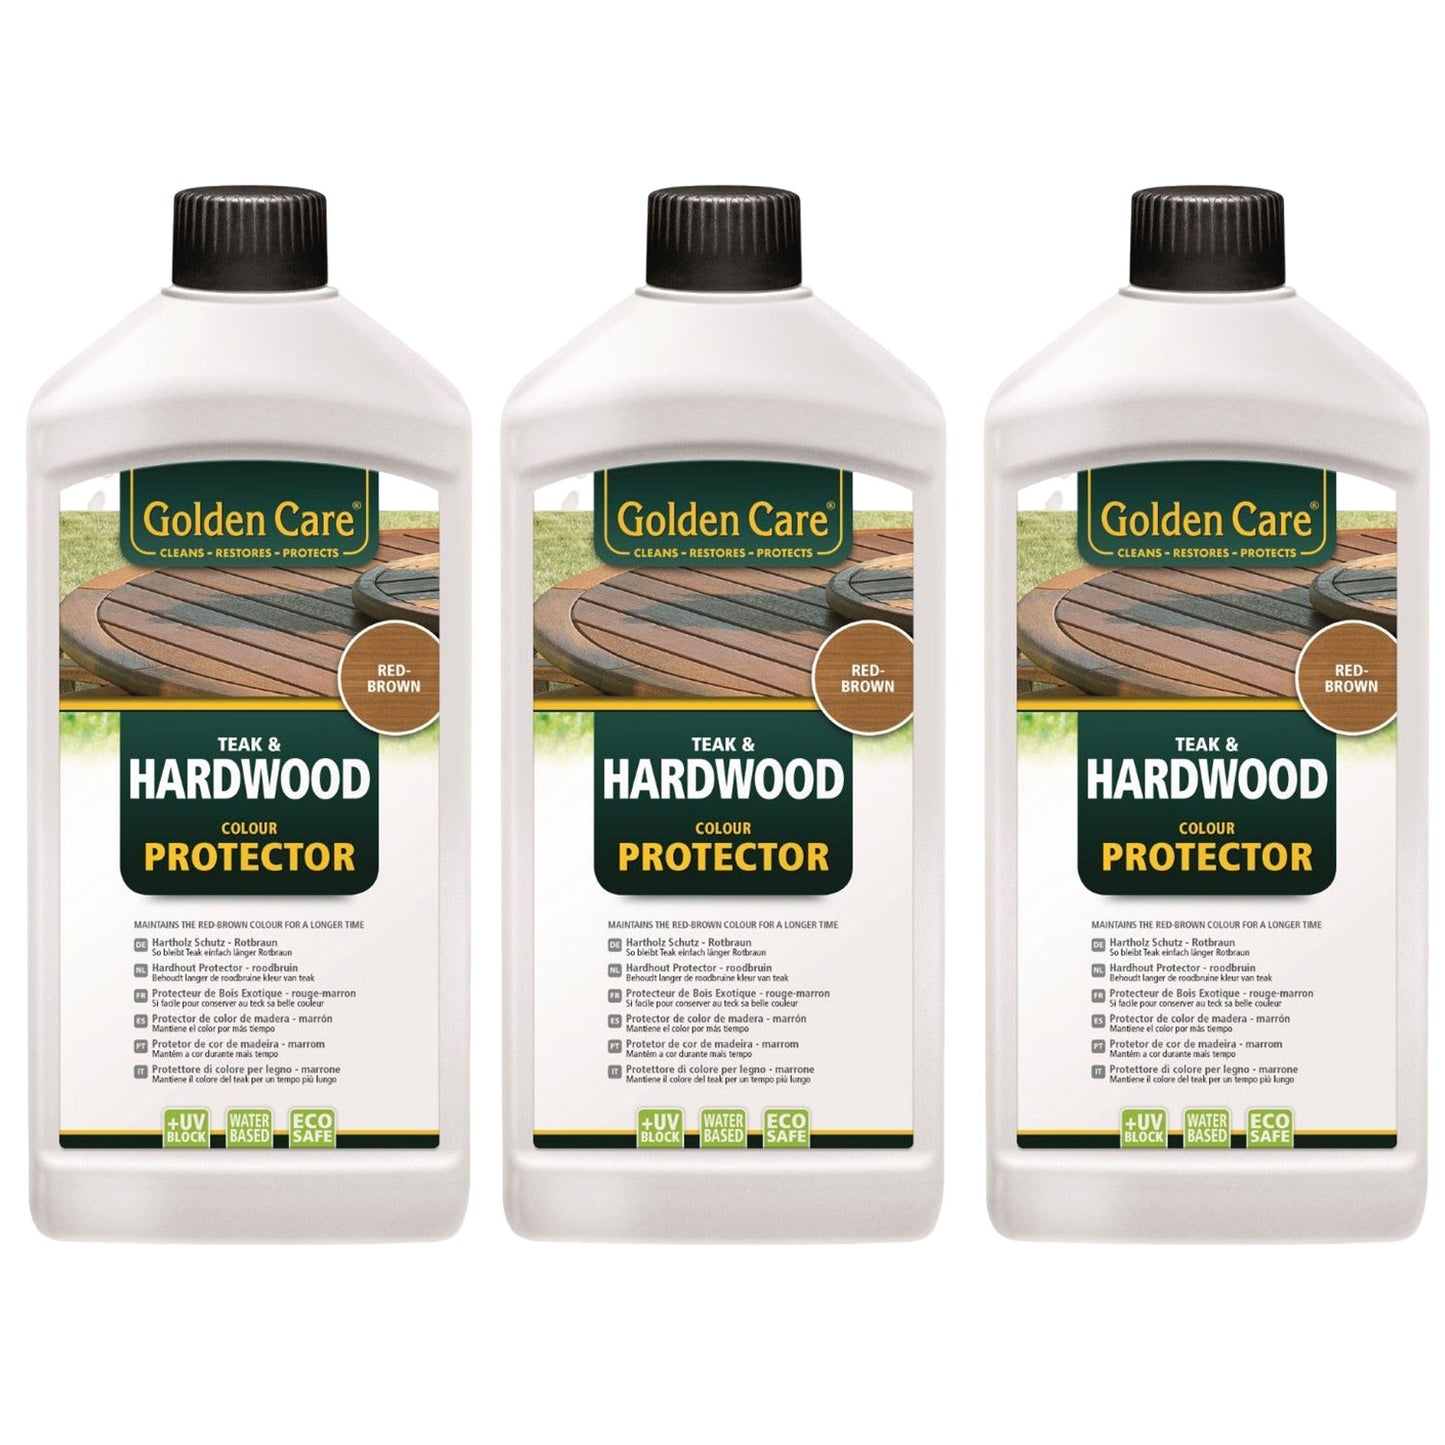 Golden Care Hardwood Protector 3 Liter Sparset